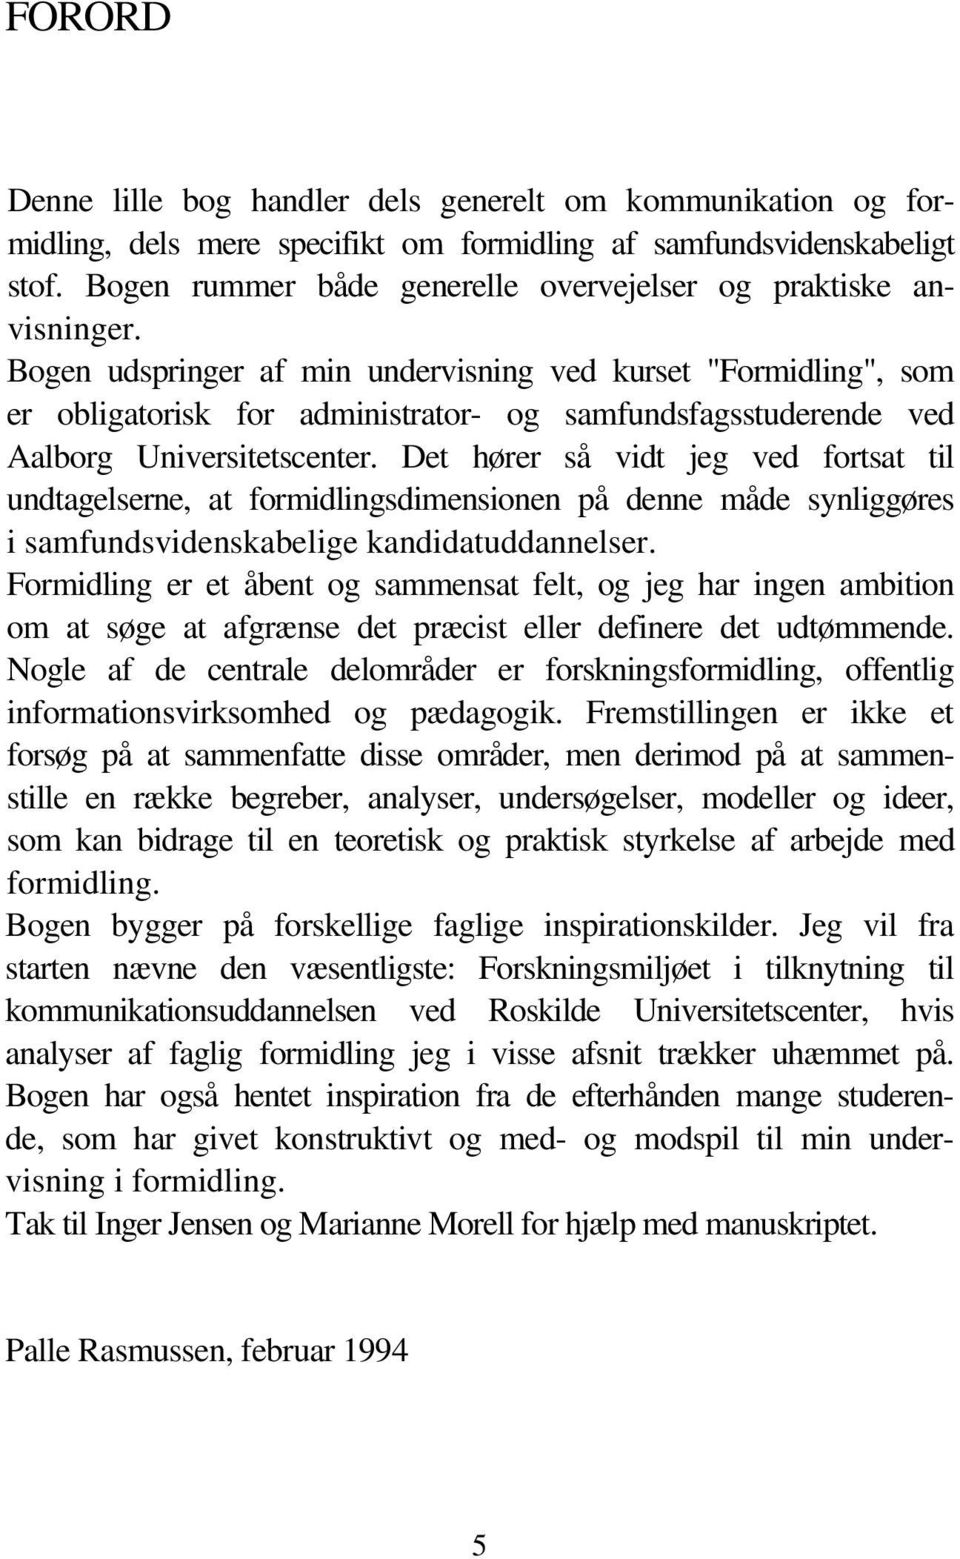 Bogen udspringer af min undervisning ved kurset "Formidling", som er obligatorisk for administrator- og samfundsfagsstuderende ved Aalborg Universitetscenter.